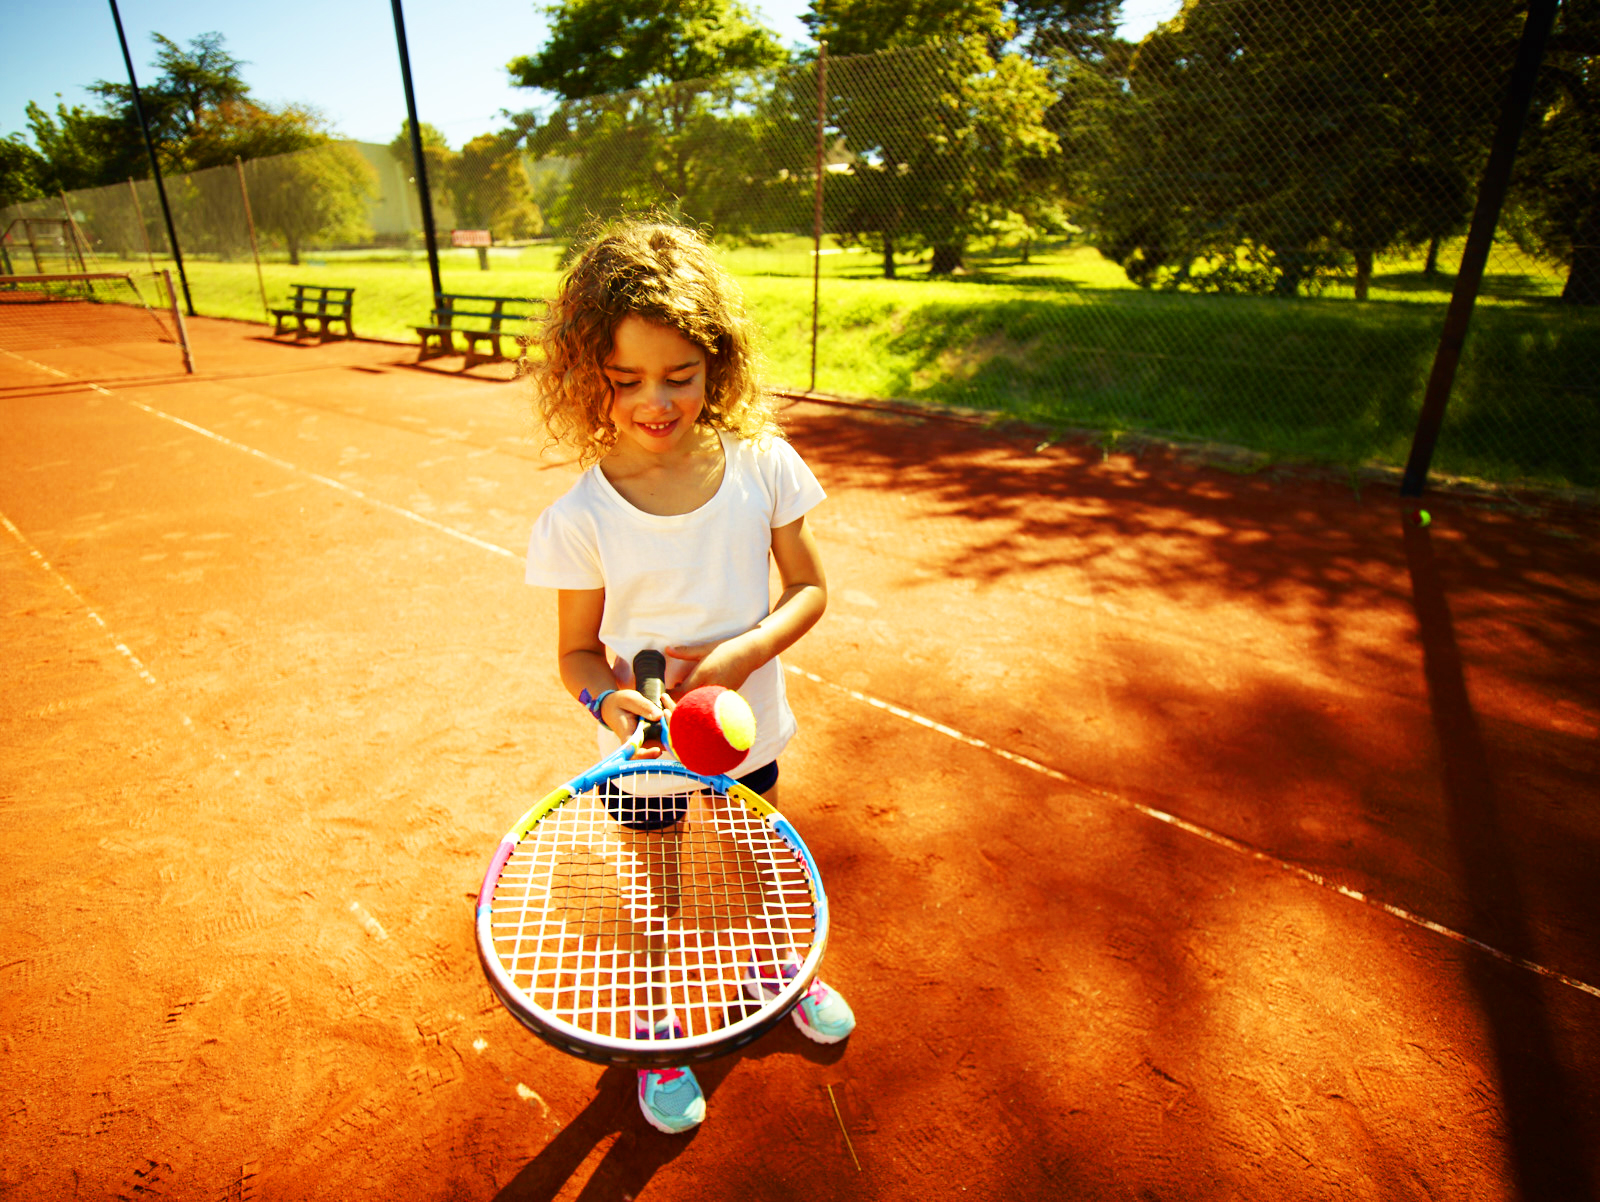 Теннис игра с ракетками. Теннис дети. Большой теннис. Большой теннис дети. Ребенок с ракеткой.